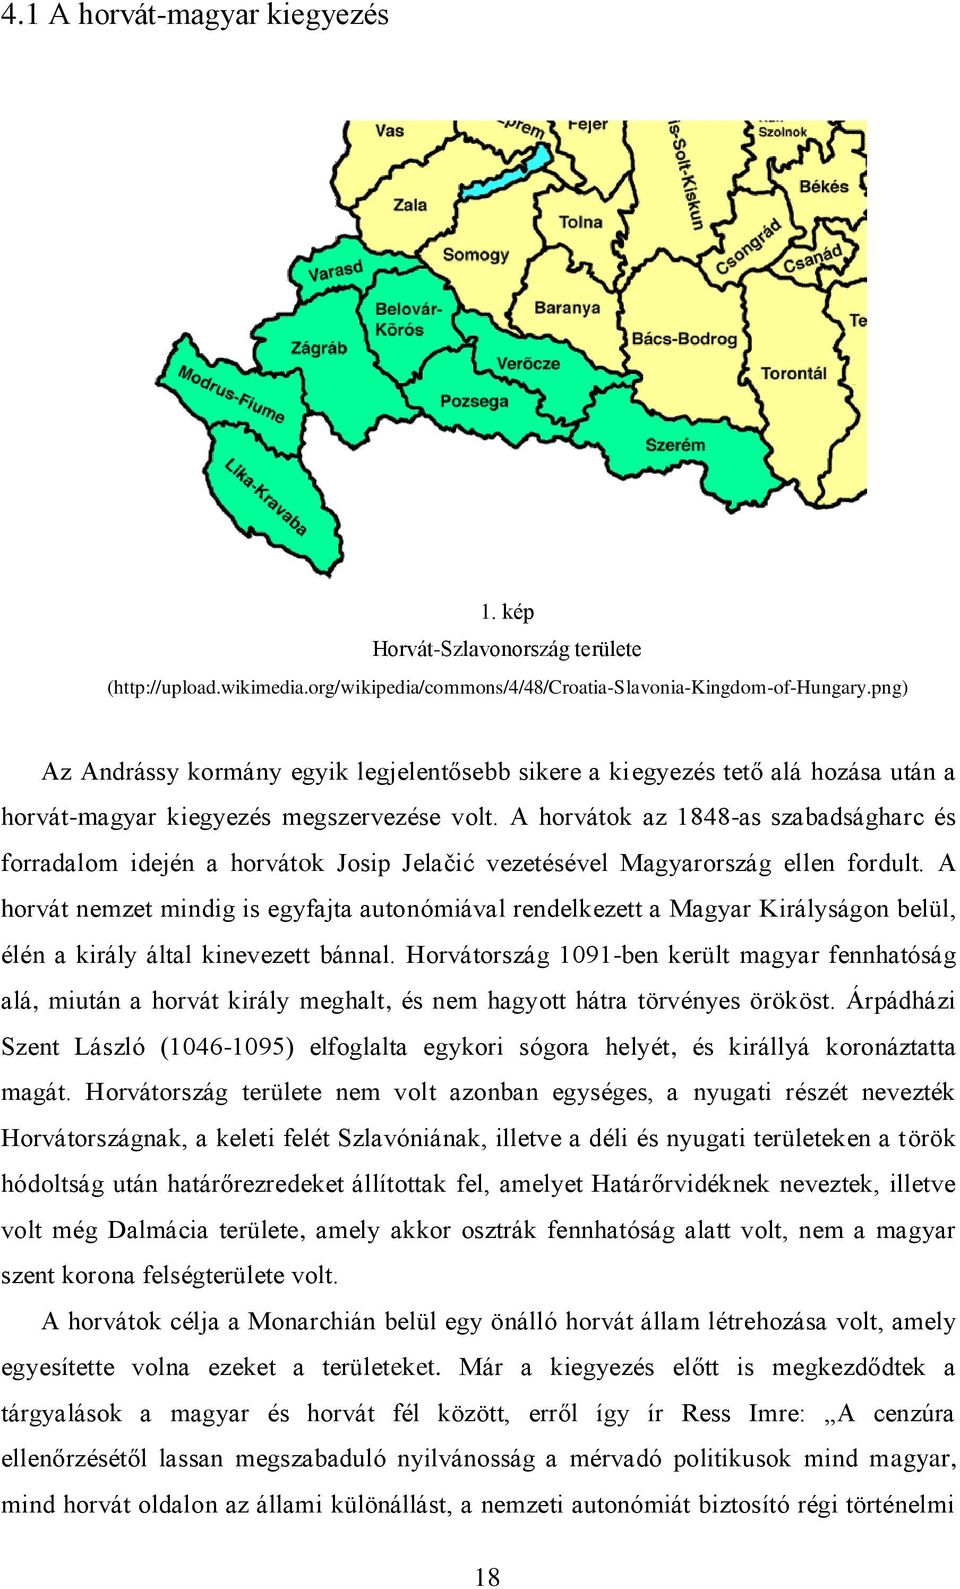 A horvátok az 1848-as szabadságharc és forradalom idején a horvátok Josip Jelačić vezetésével Magyarország ellen fordult.